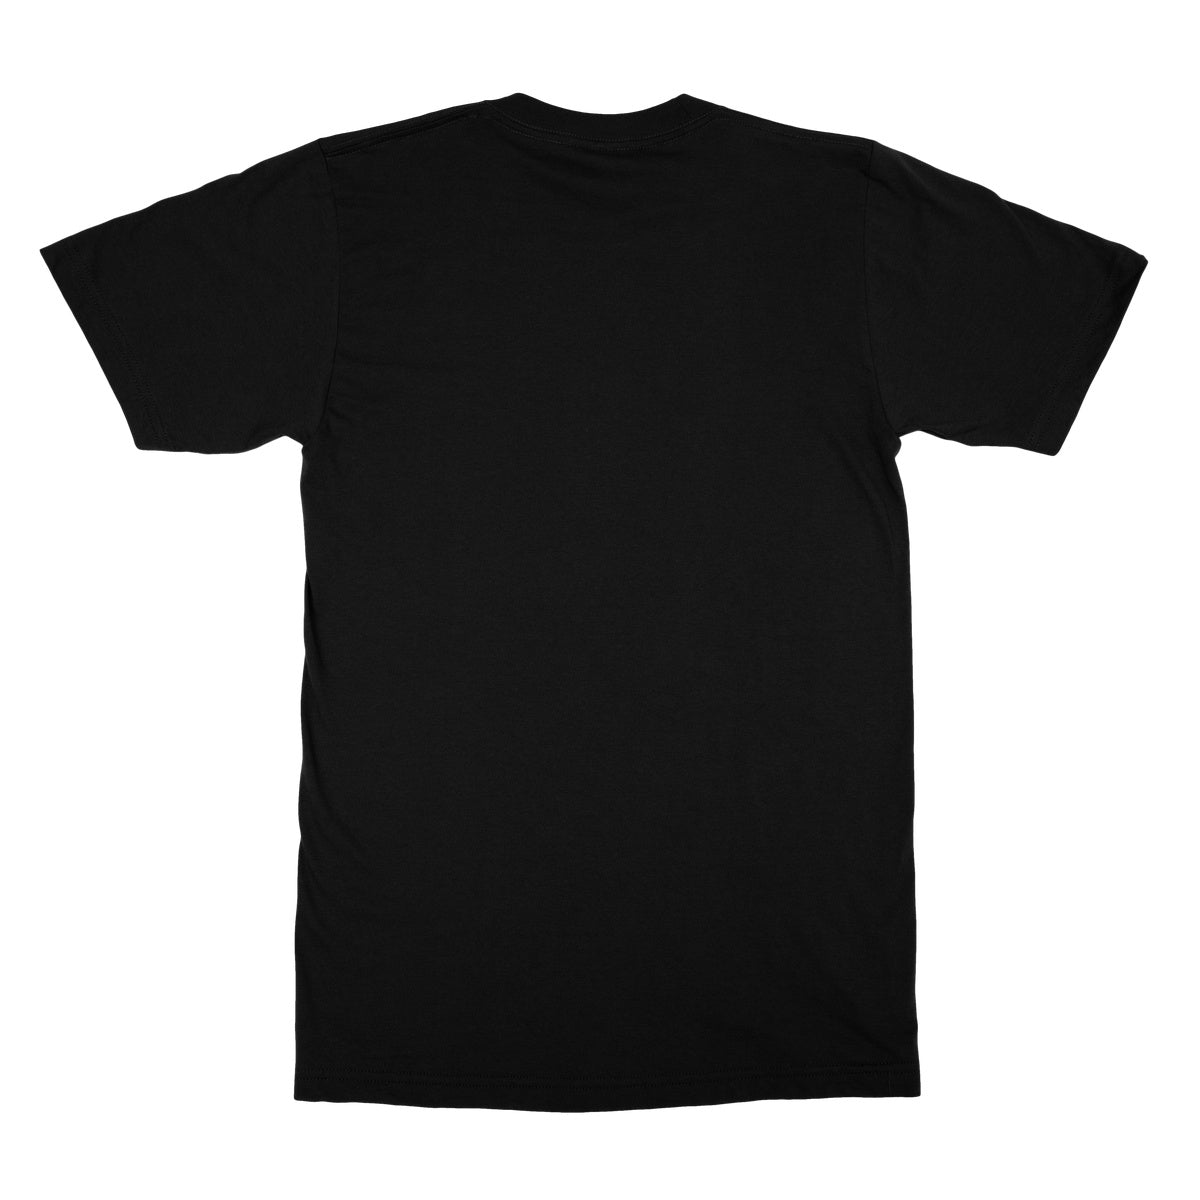 Lachenal Logo Softstyle T-Shirt